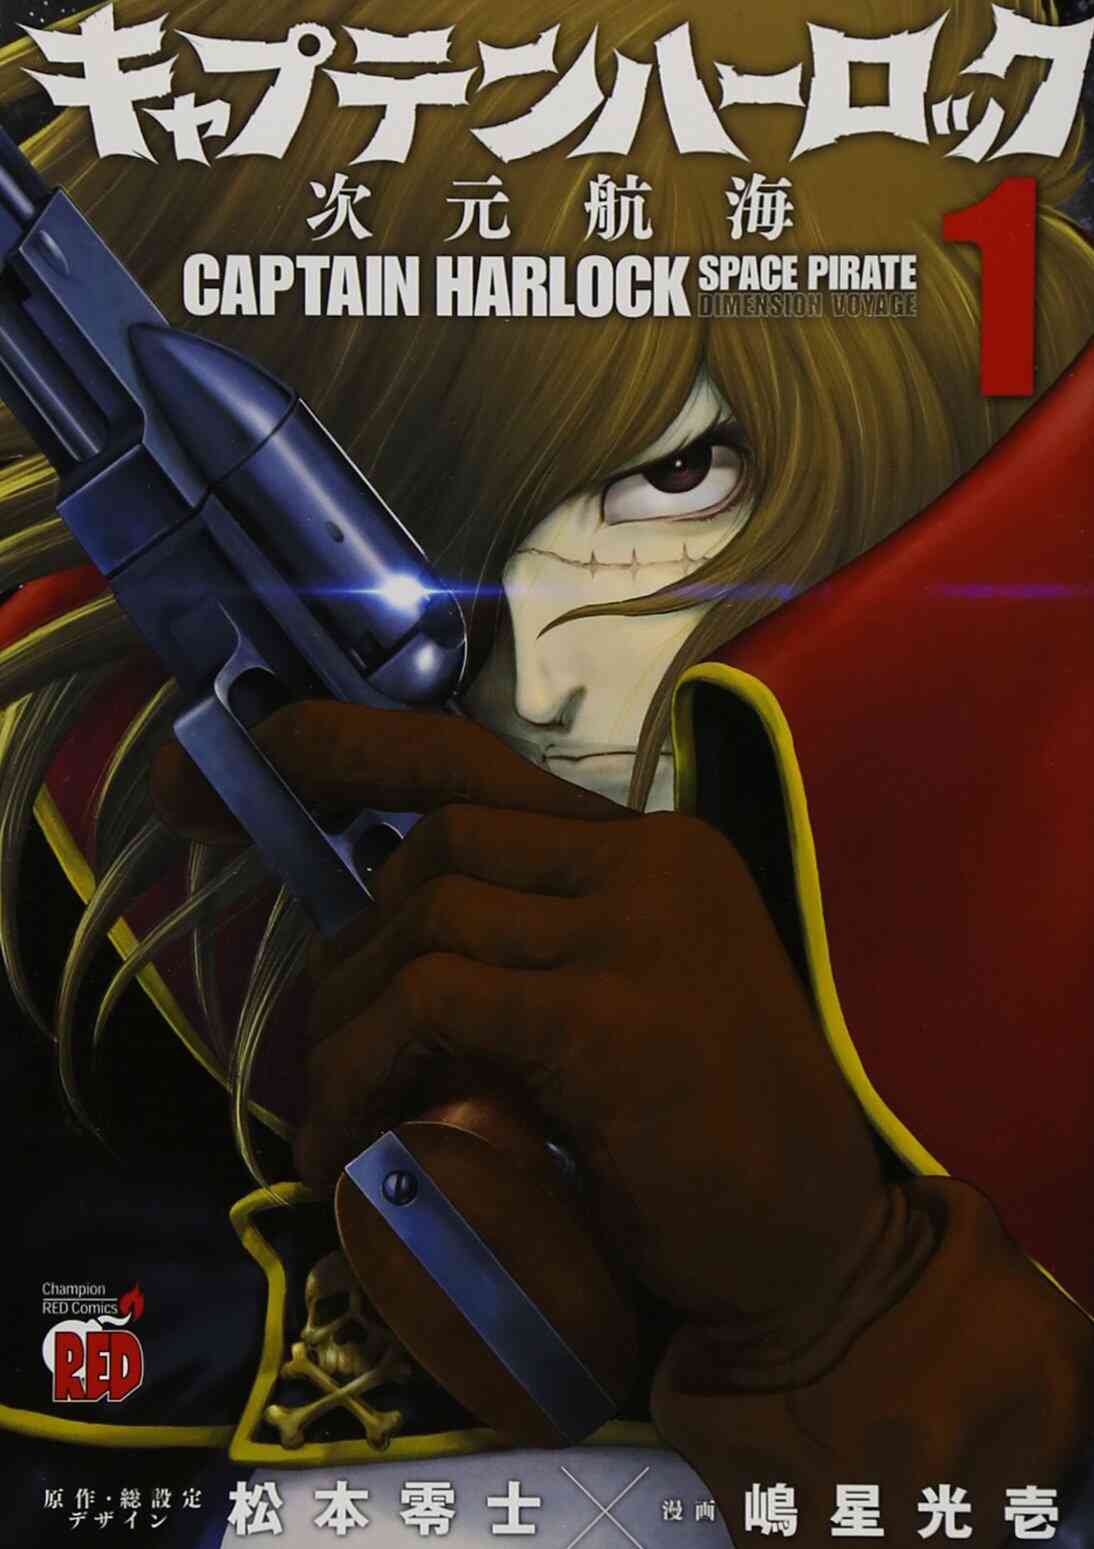 キャプテンハーロック 次元航海 1 10巻 最新刊 漫画全巻ドットコム